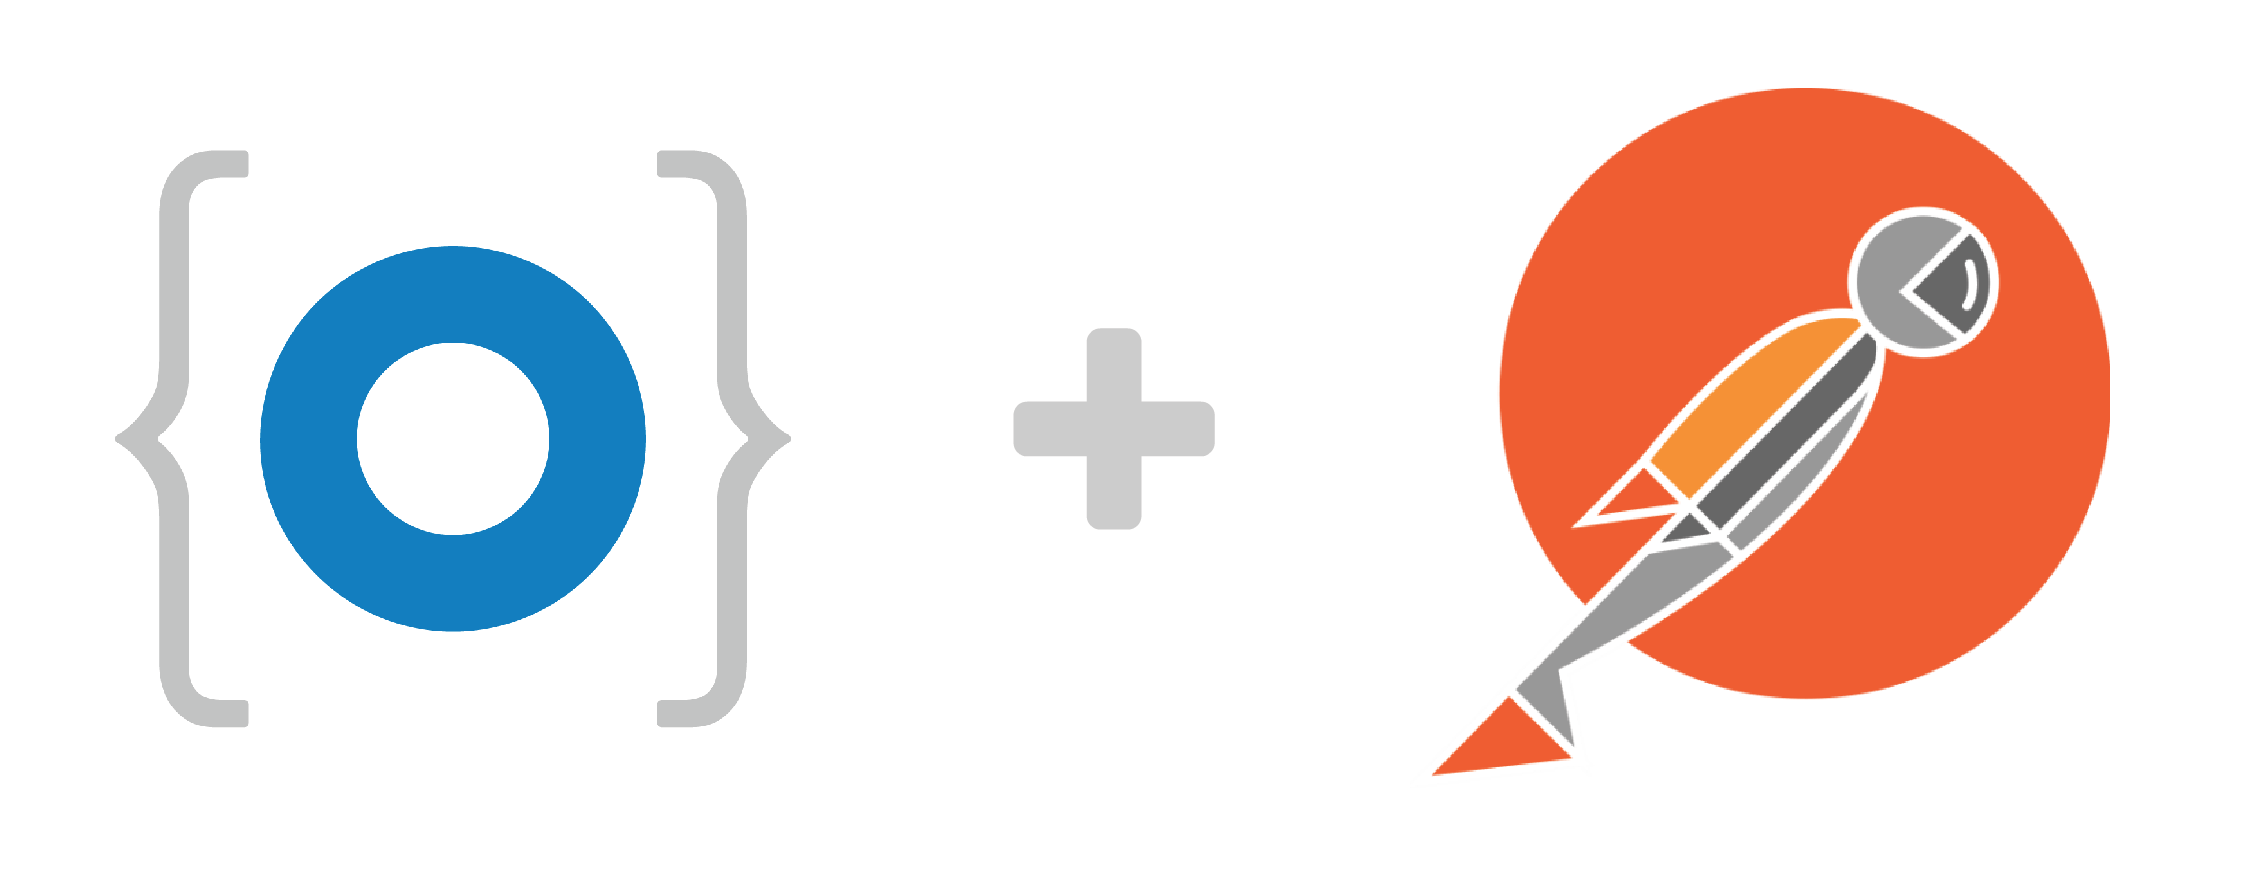 Postman Logo - Get Started with the Okta REST APIs | Okta Developer